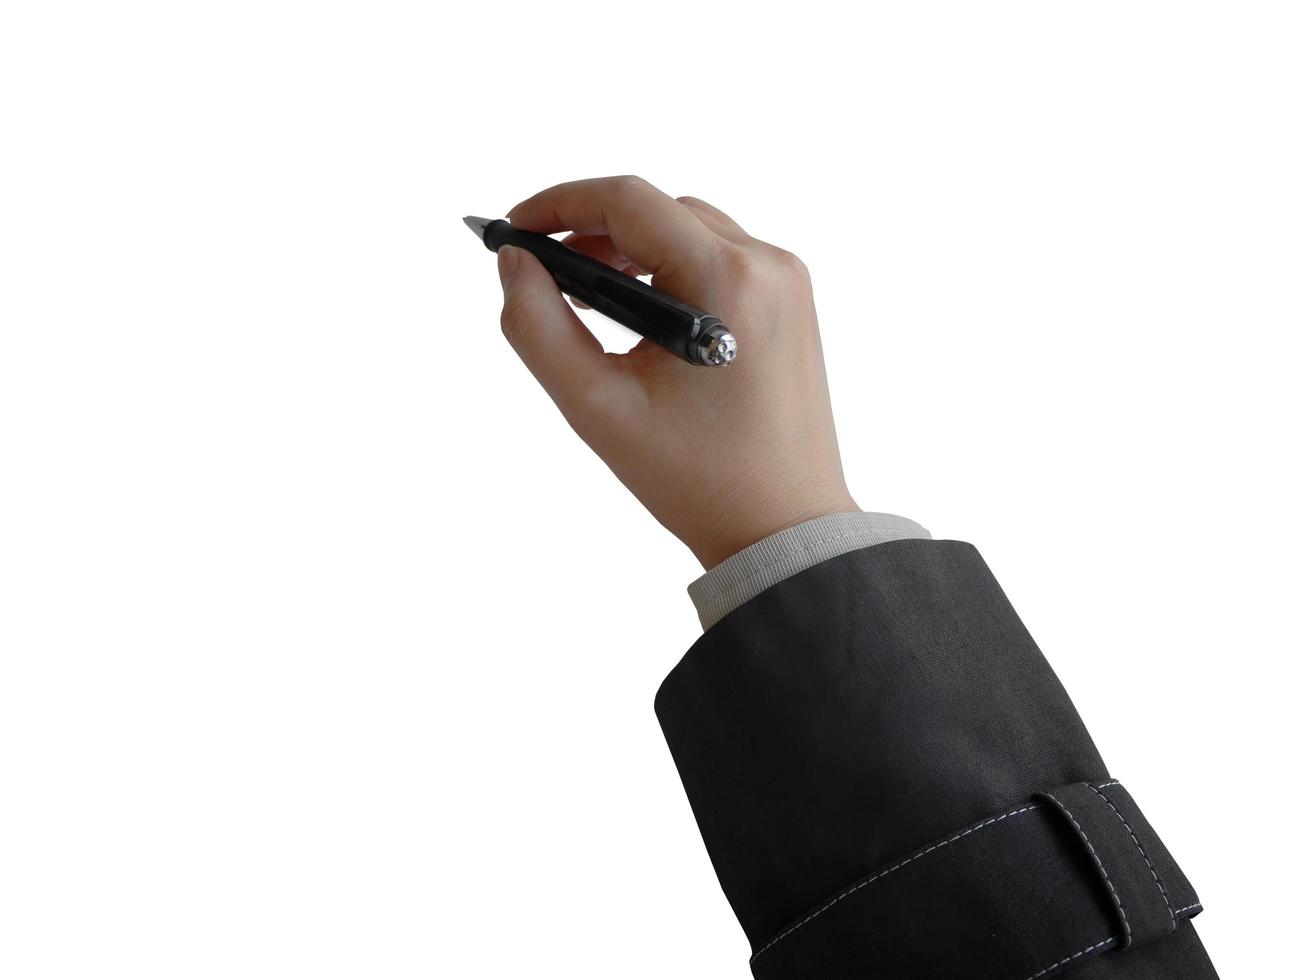 Isolierte weibliche Hand, die einen Stift im Geschäftsstil hält, für Präsentationselement foto